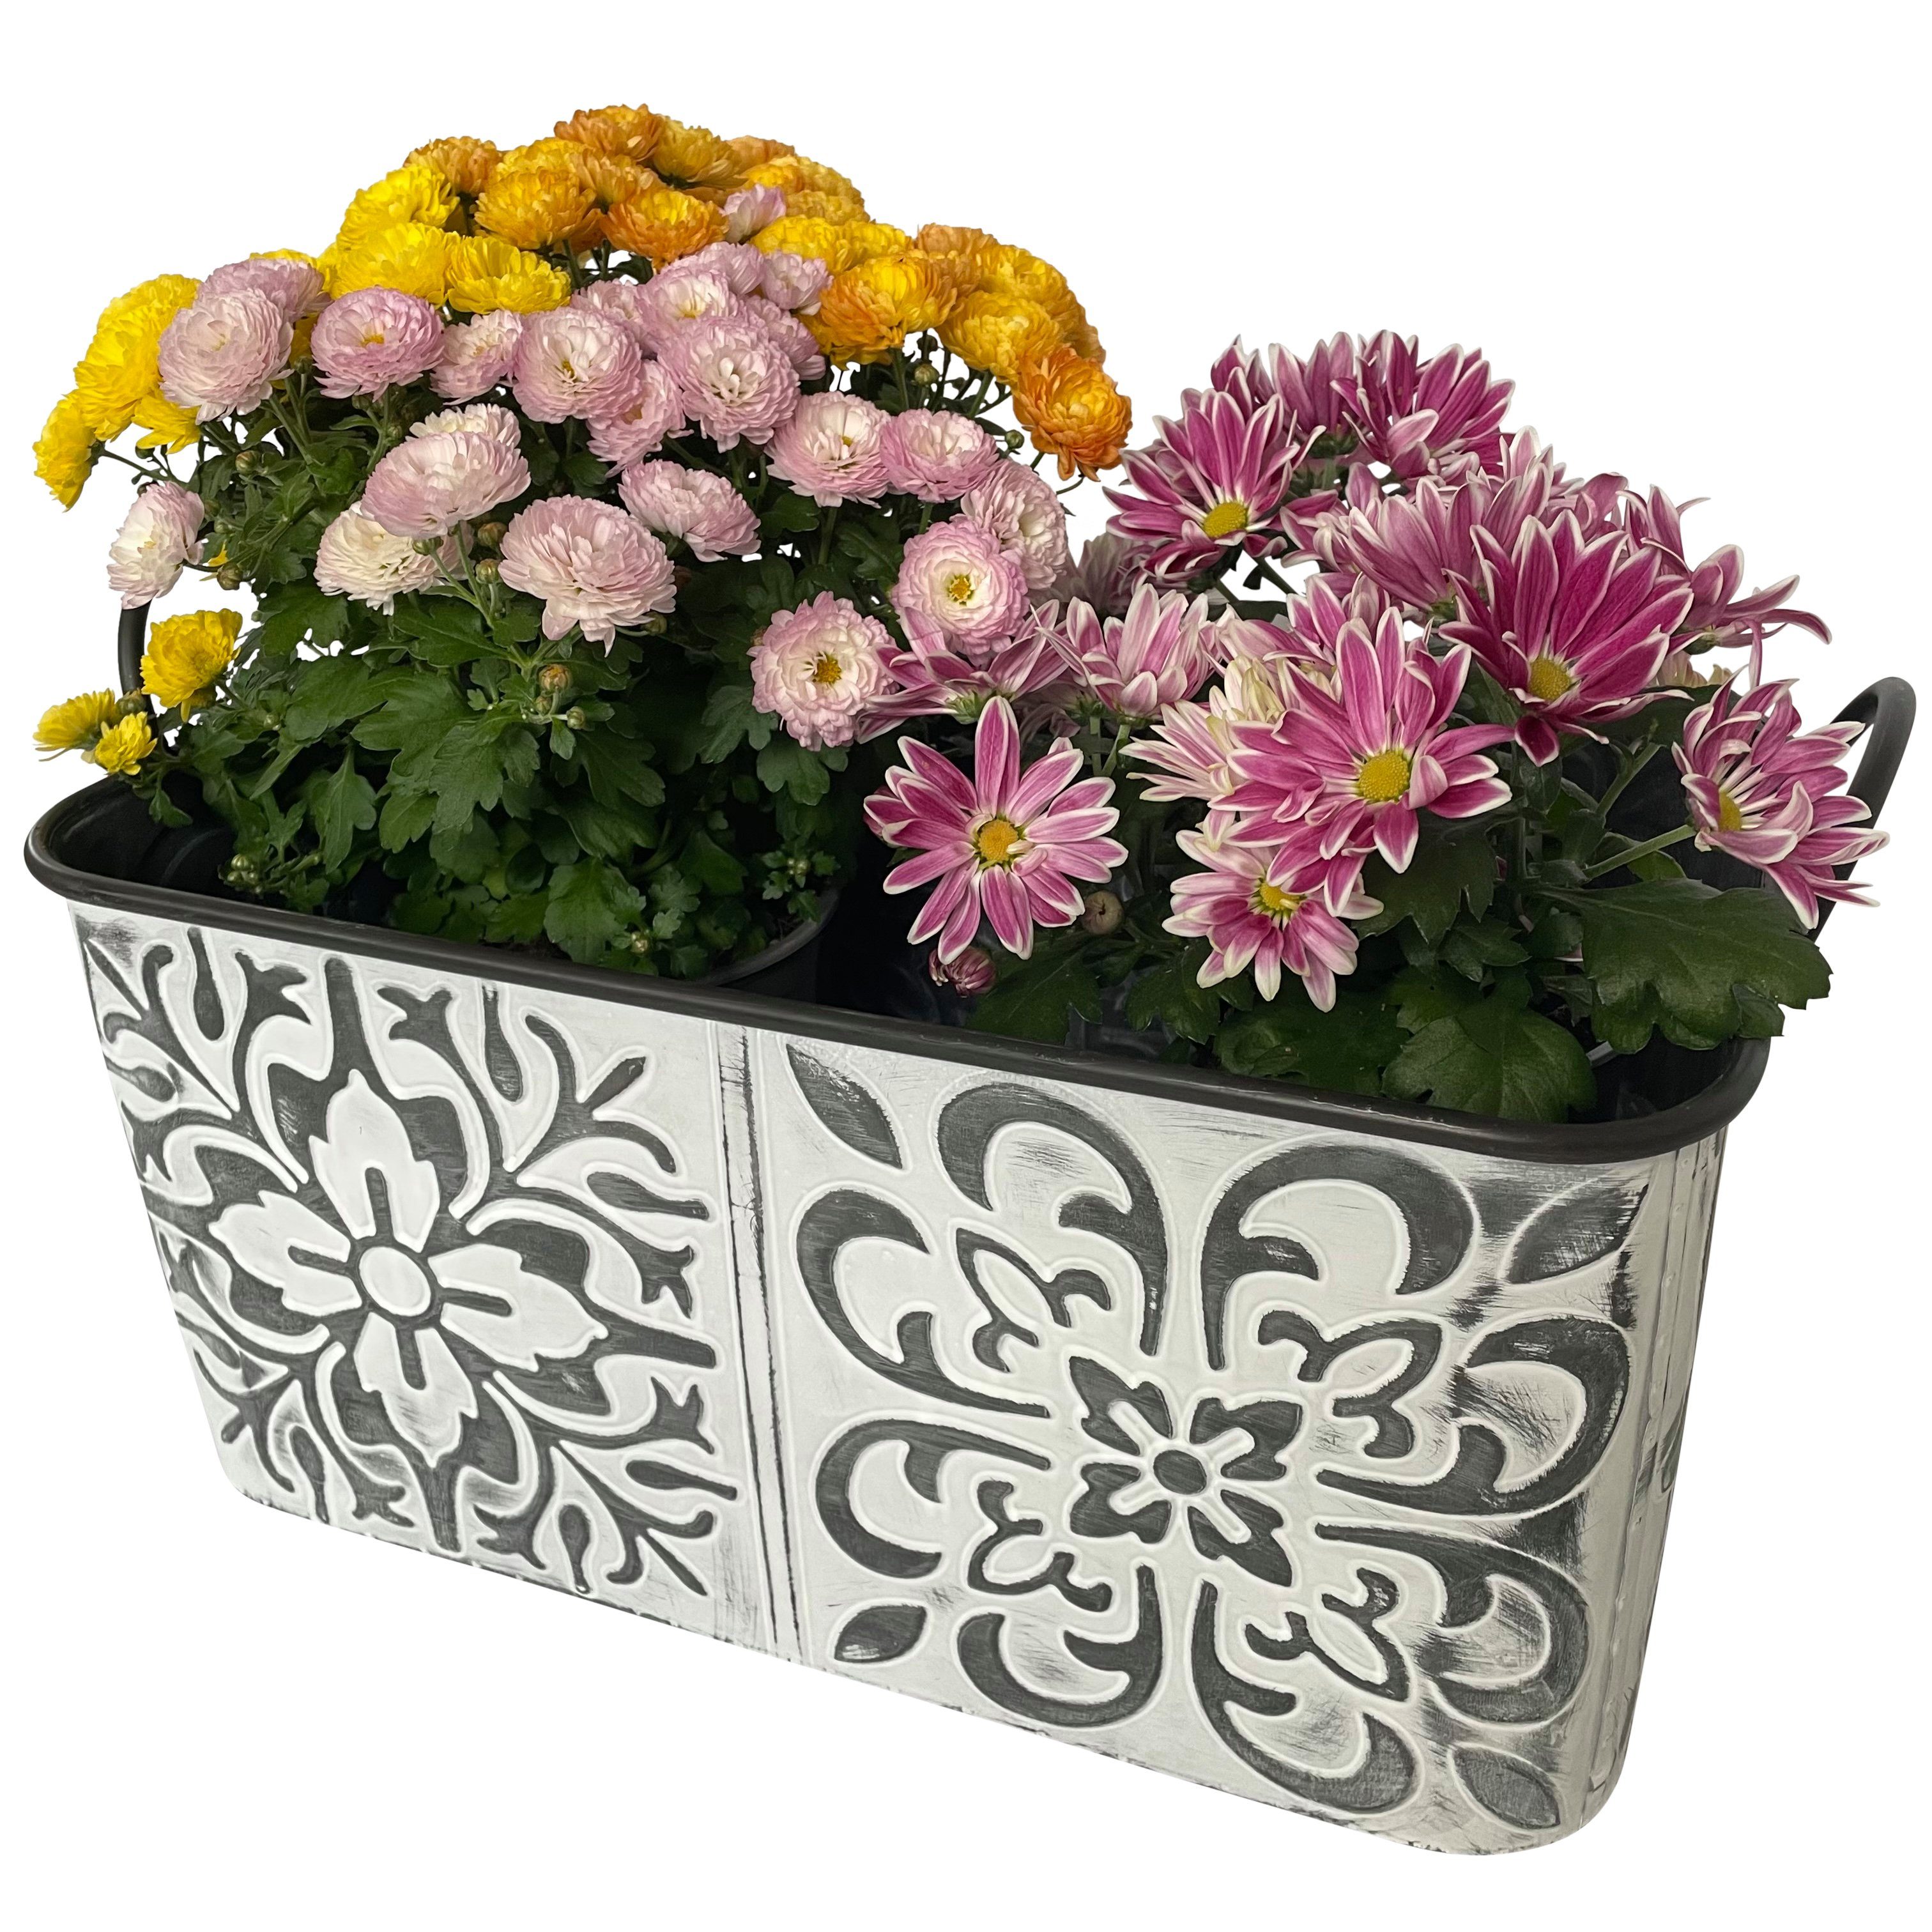 Online-Fuchs Blumentopf Zinkwanne mit Blumenmuster groß Кашпо Kasten Metall (Vintage Silber/weiß), Maße mittlerer Blumenkasten ca. 43 x 26 cm und 21 cm hoch